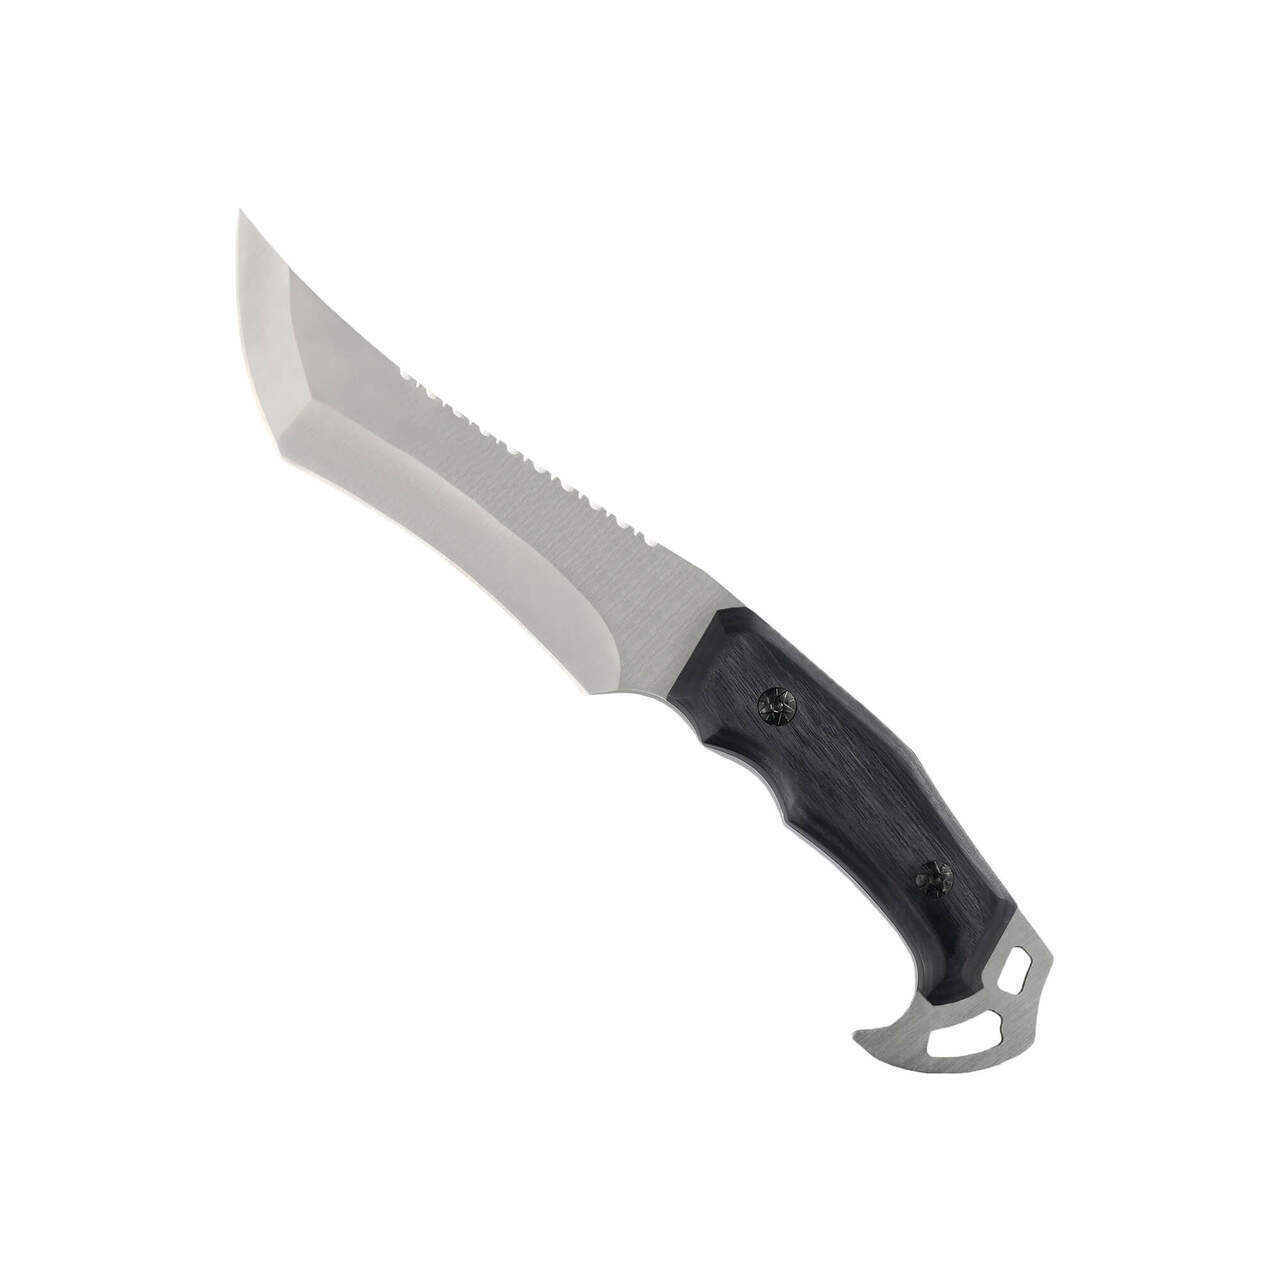 Tekto Silver Fox Fixed Blade Knife